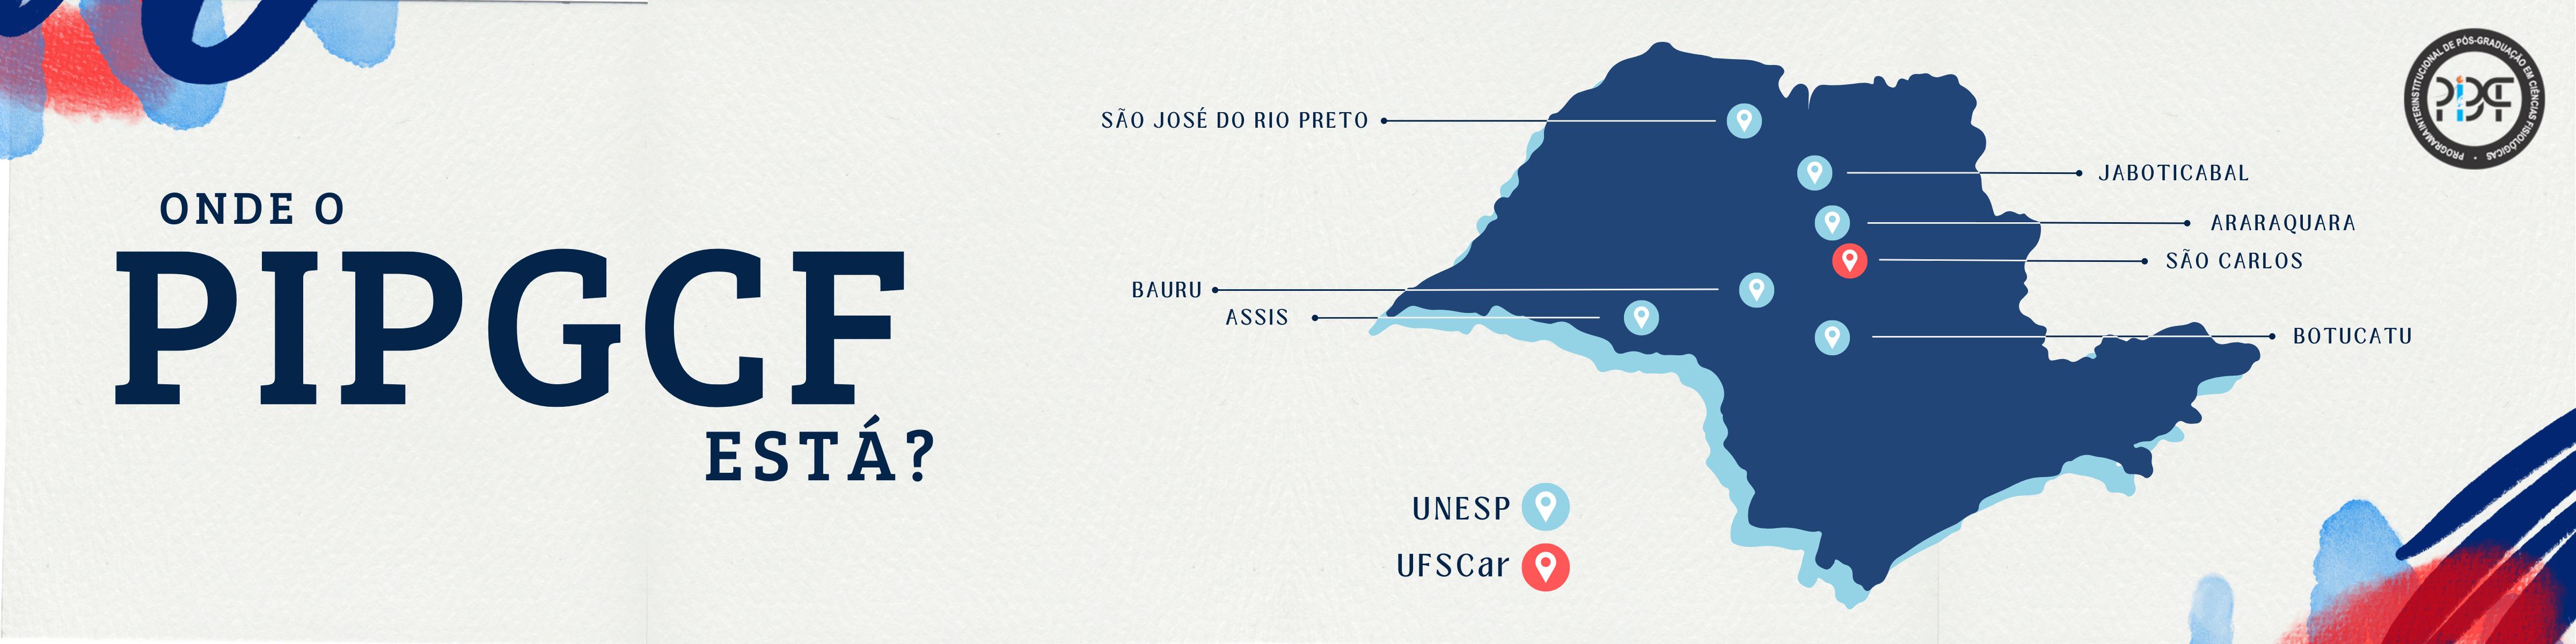 Nesta imagem aparece um mapa do Estado de São Paulo indicando as cidades onde existem orientadores credenciados no PIPGCF: São Carlos, Araraquara, Jaboticabal, Bauru, São José do Rio Preto, Botucatu e Assis.